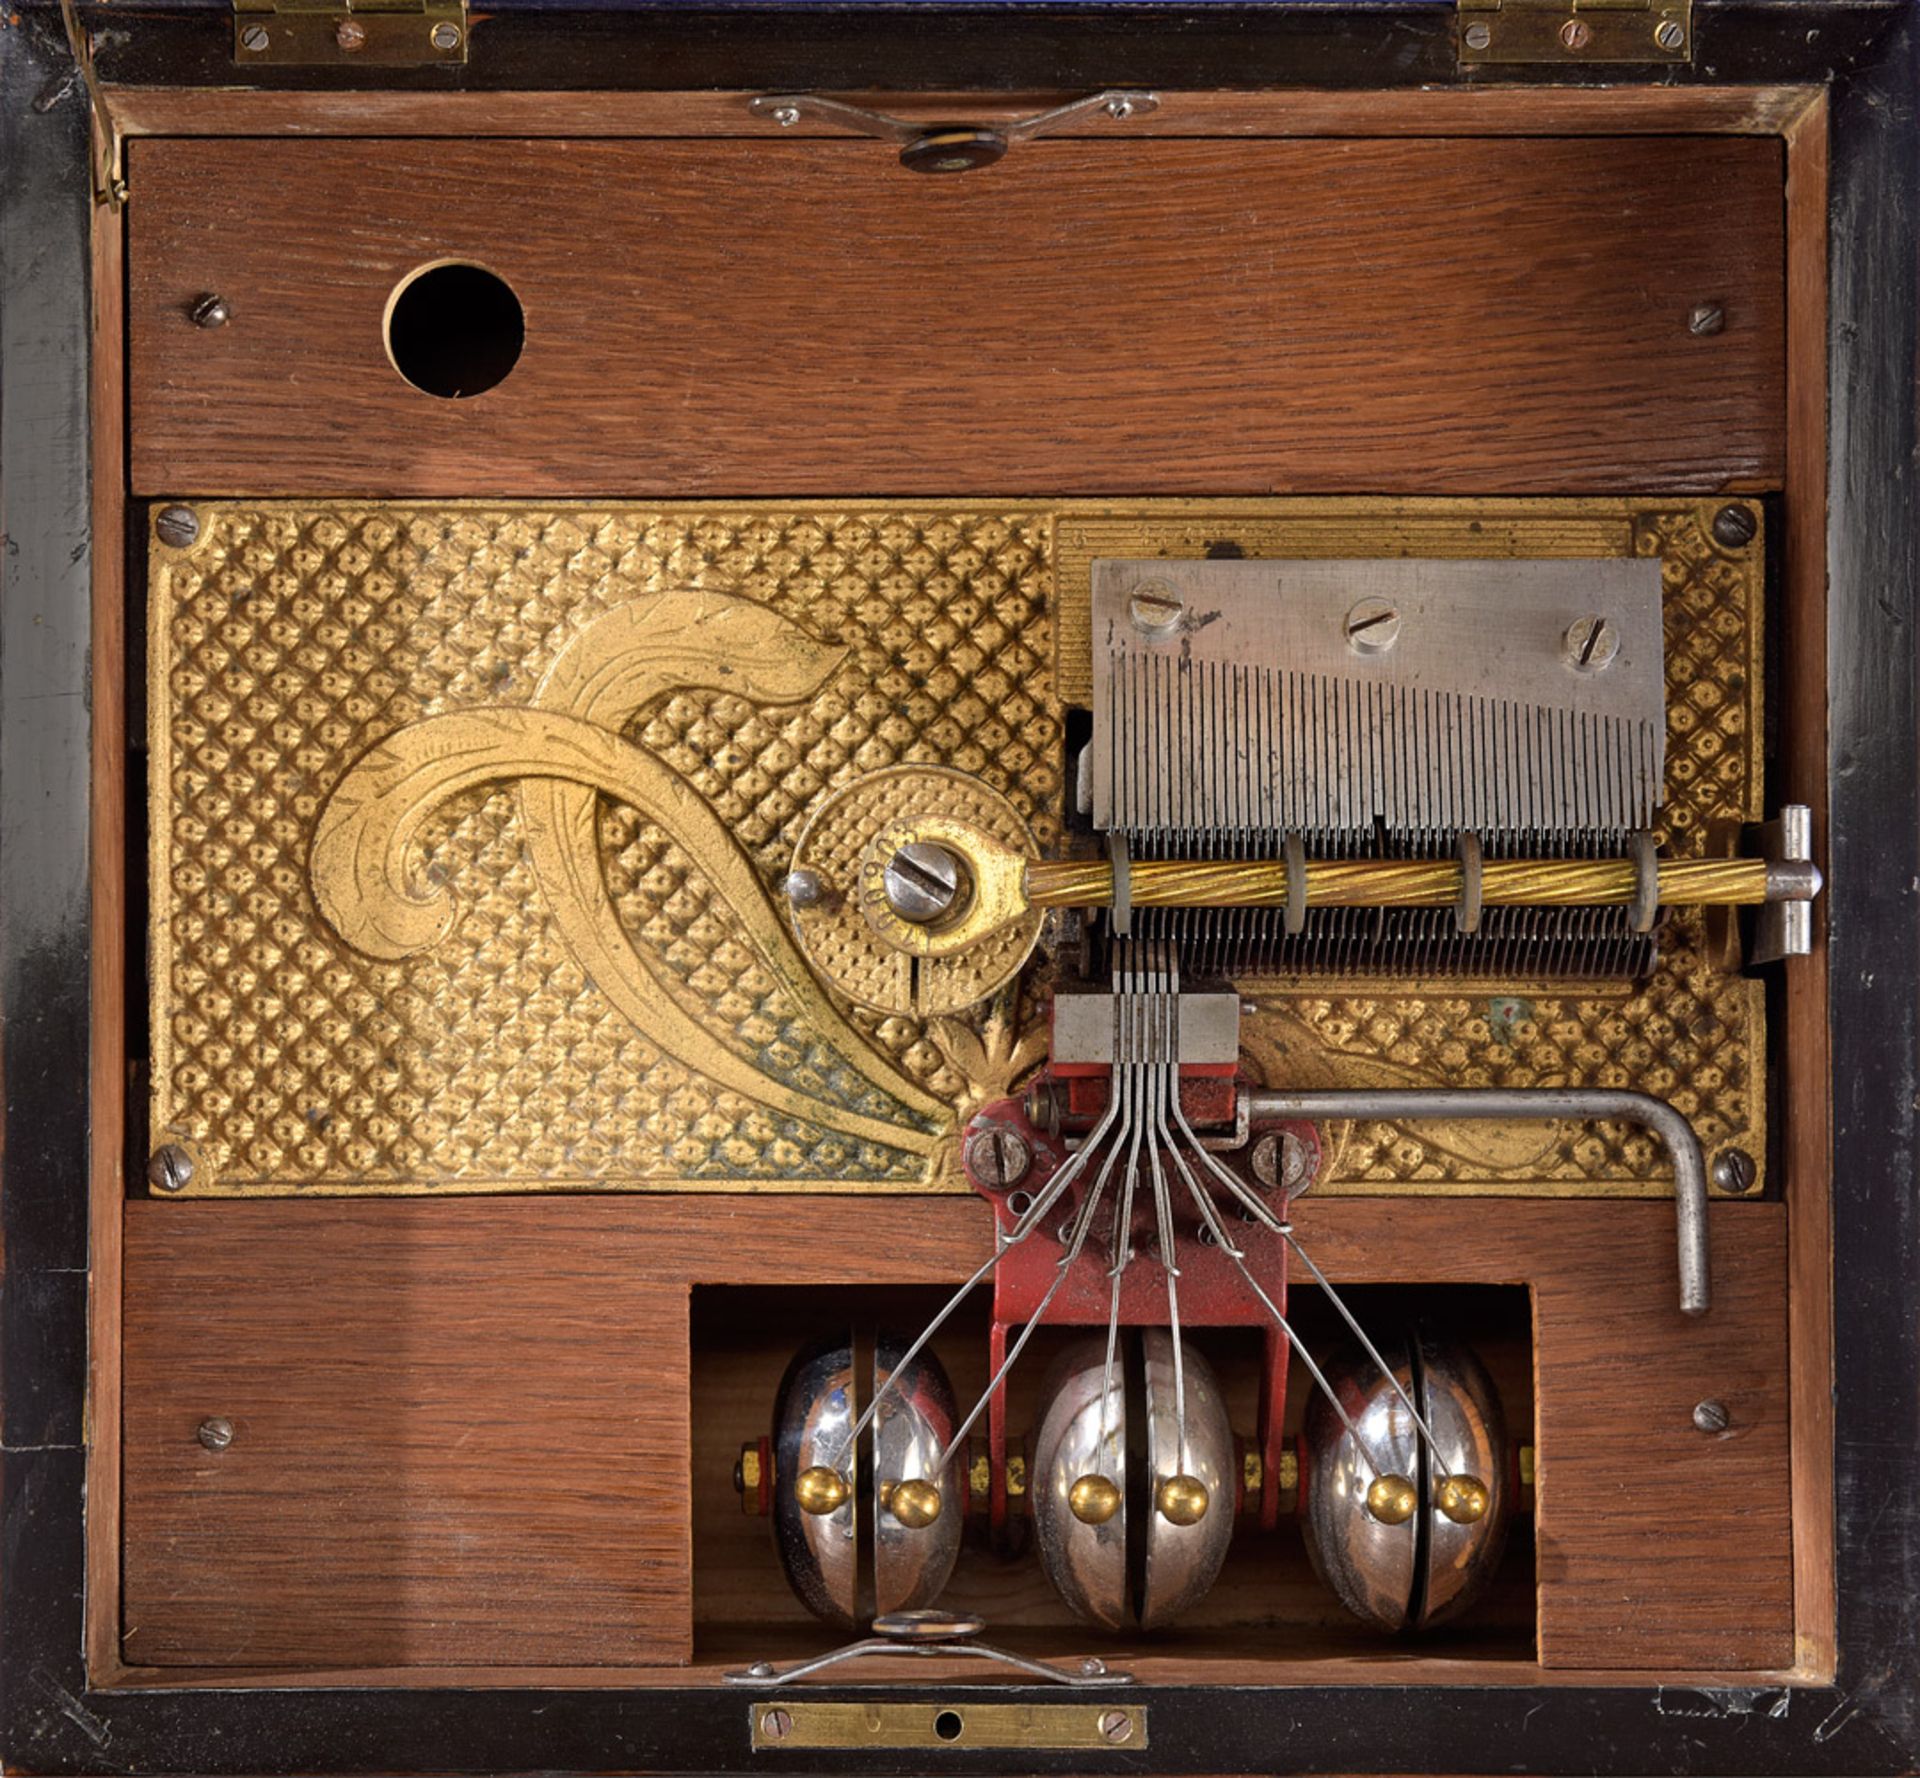 Kalliope-Plattenspieluhr mit Glockenspiel Um 1900 - Bild 3 aus 3